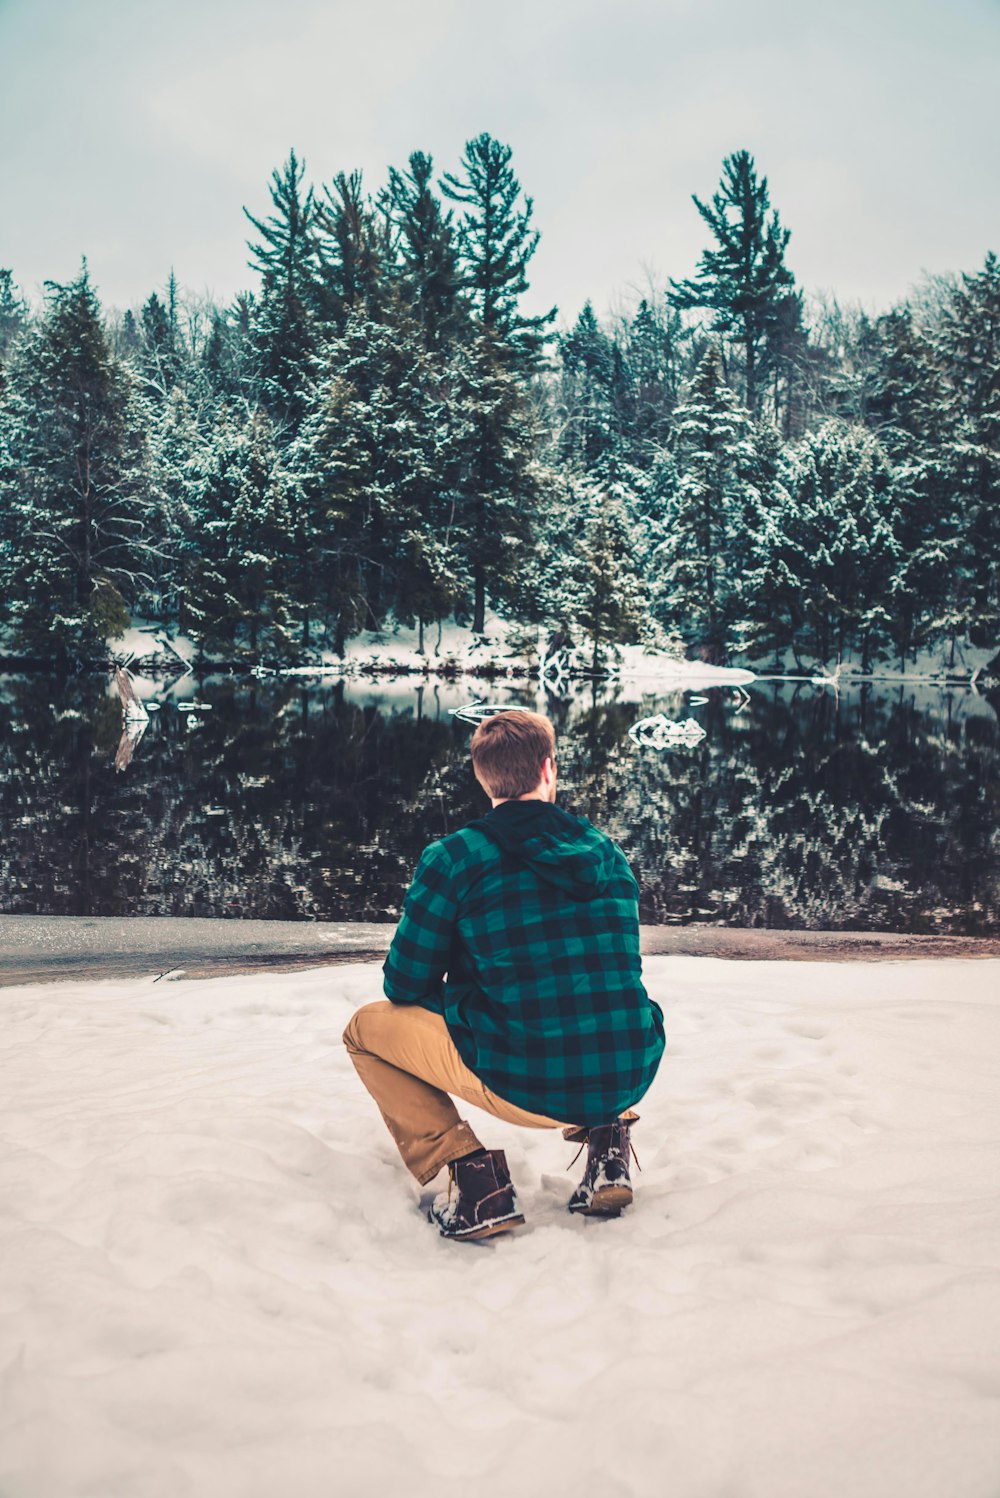 눈밭에 앉아있는 남자